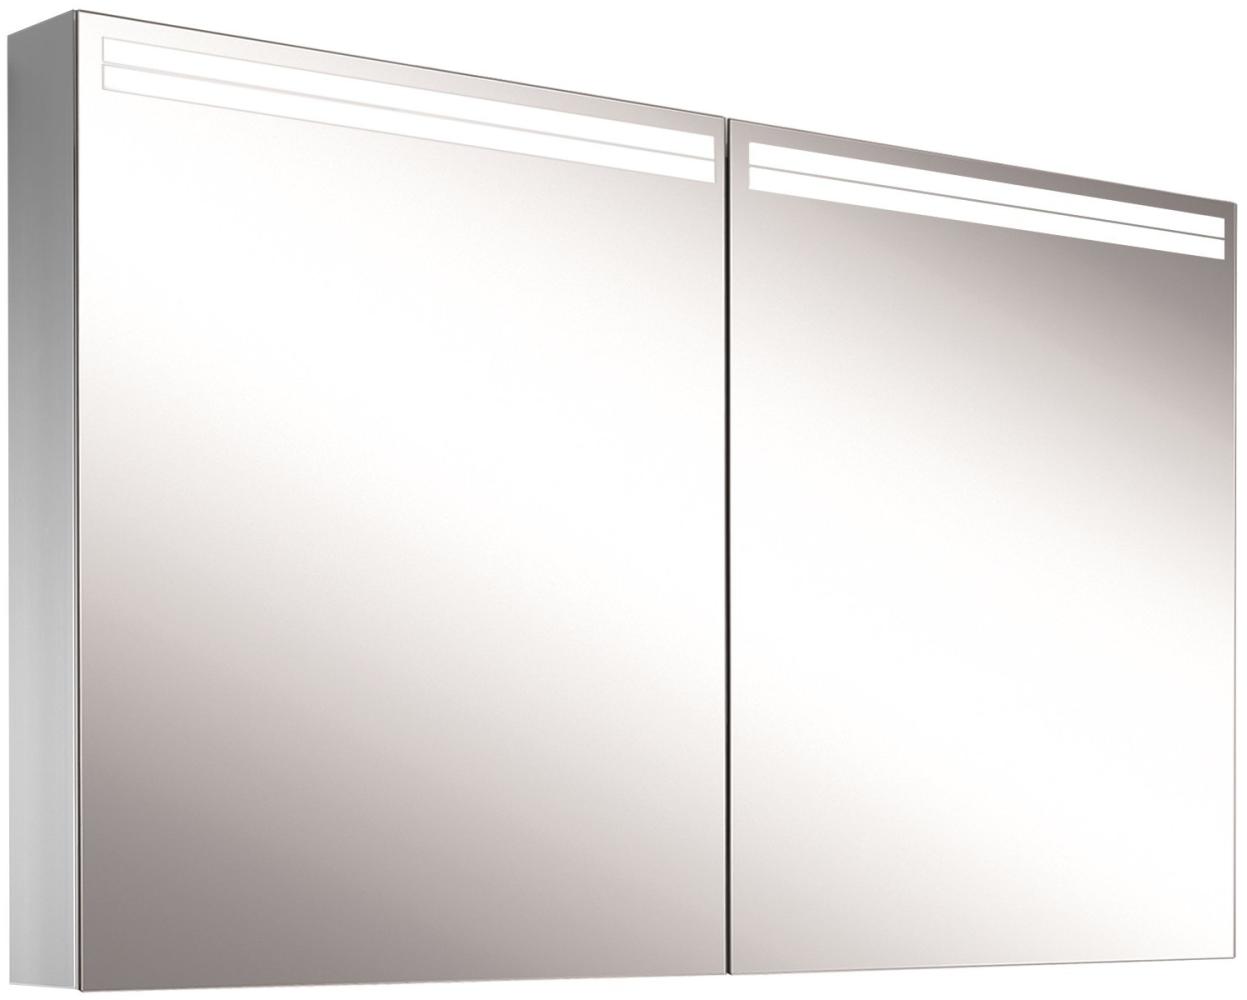 Schneider ARANGALINE LED Lichtspiegelschrank, 2 Doppelspiegeltüren, 130x70x12cm, 160. 530. 02. 41, Ausführung: CH-Norm/Korpus silber eloxiert - 160. 530. 01. 50 Bild 1